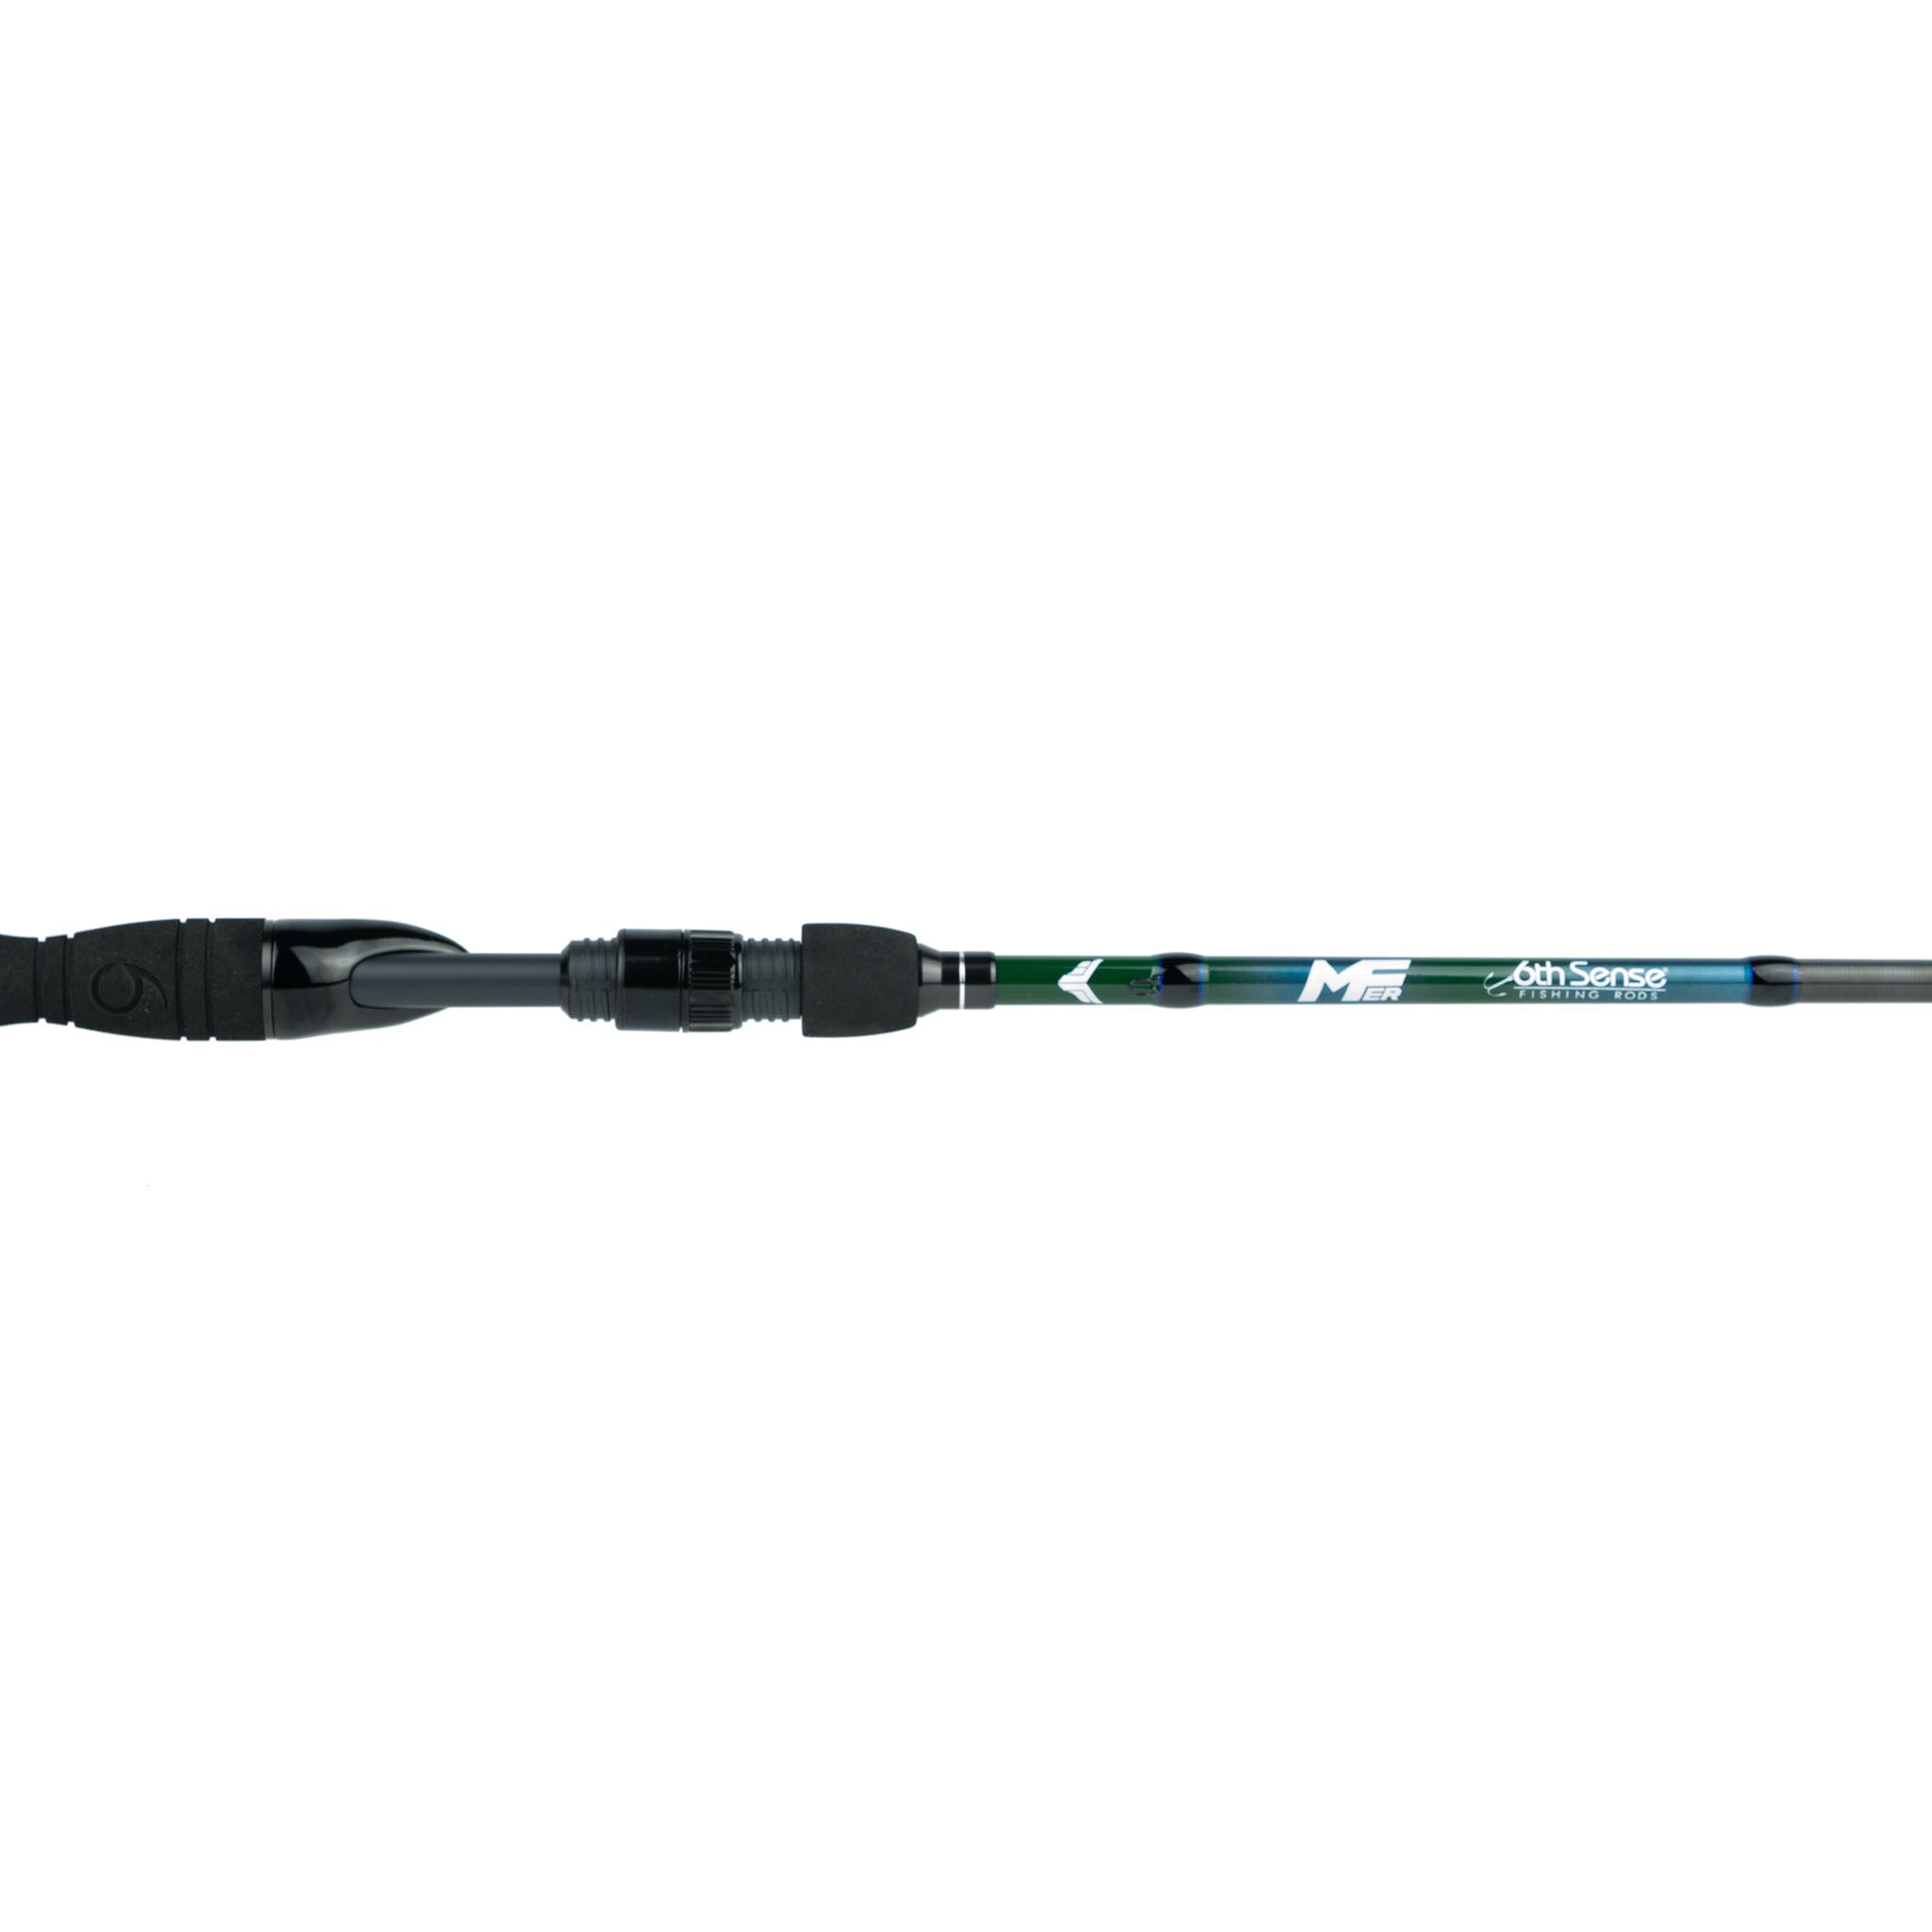 6th Sense Fishing - Milliken Series Rod - 6'10 Medium, Med Fast